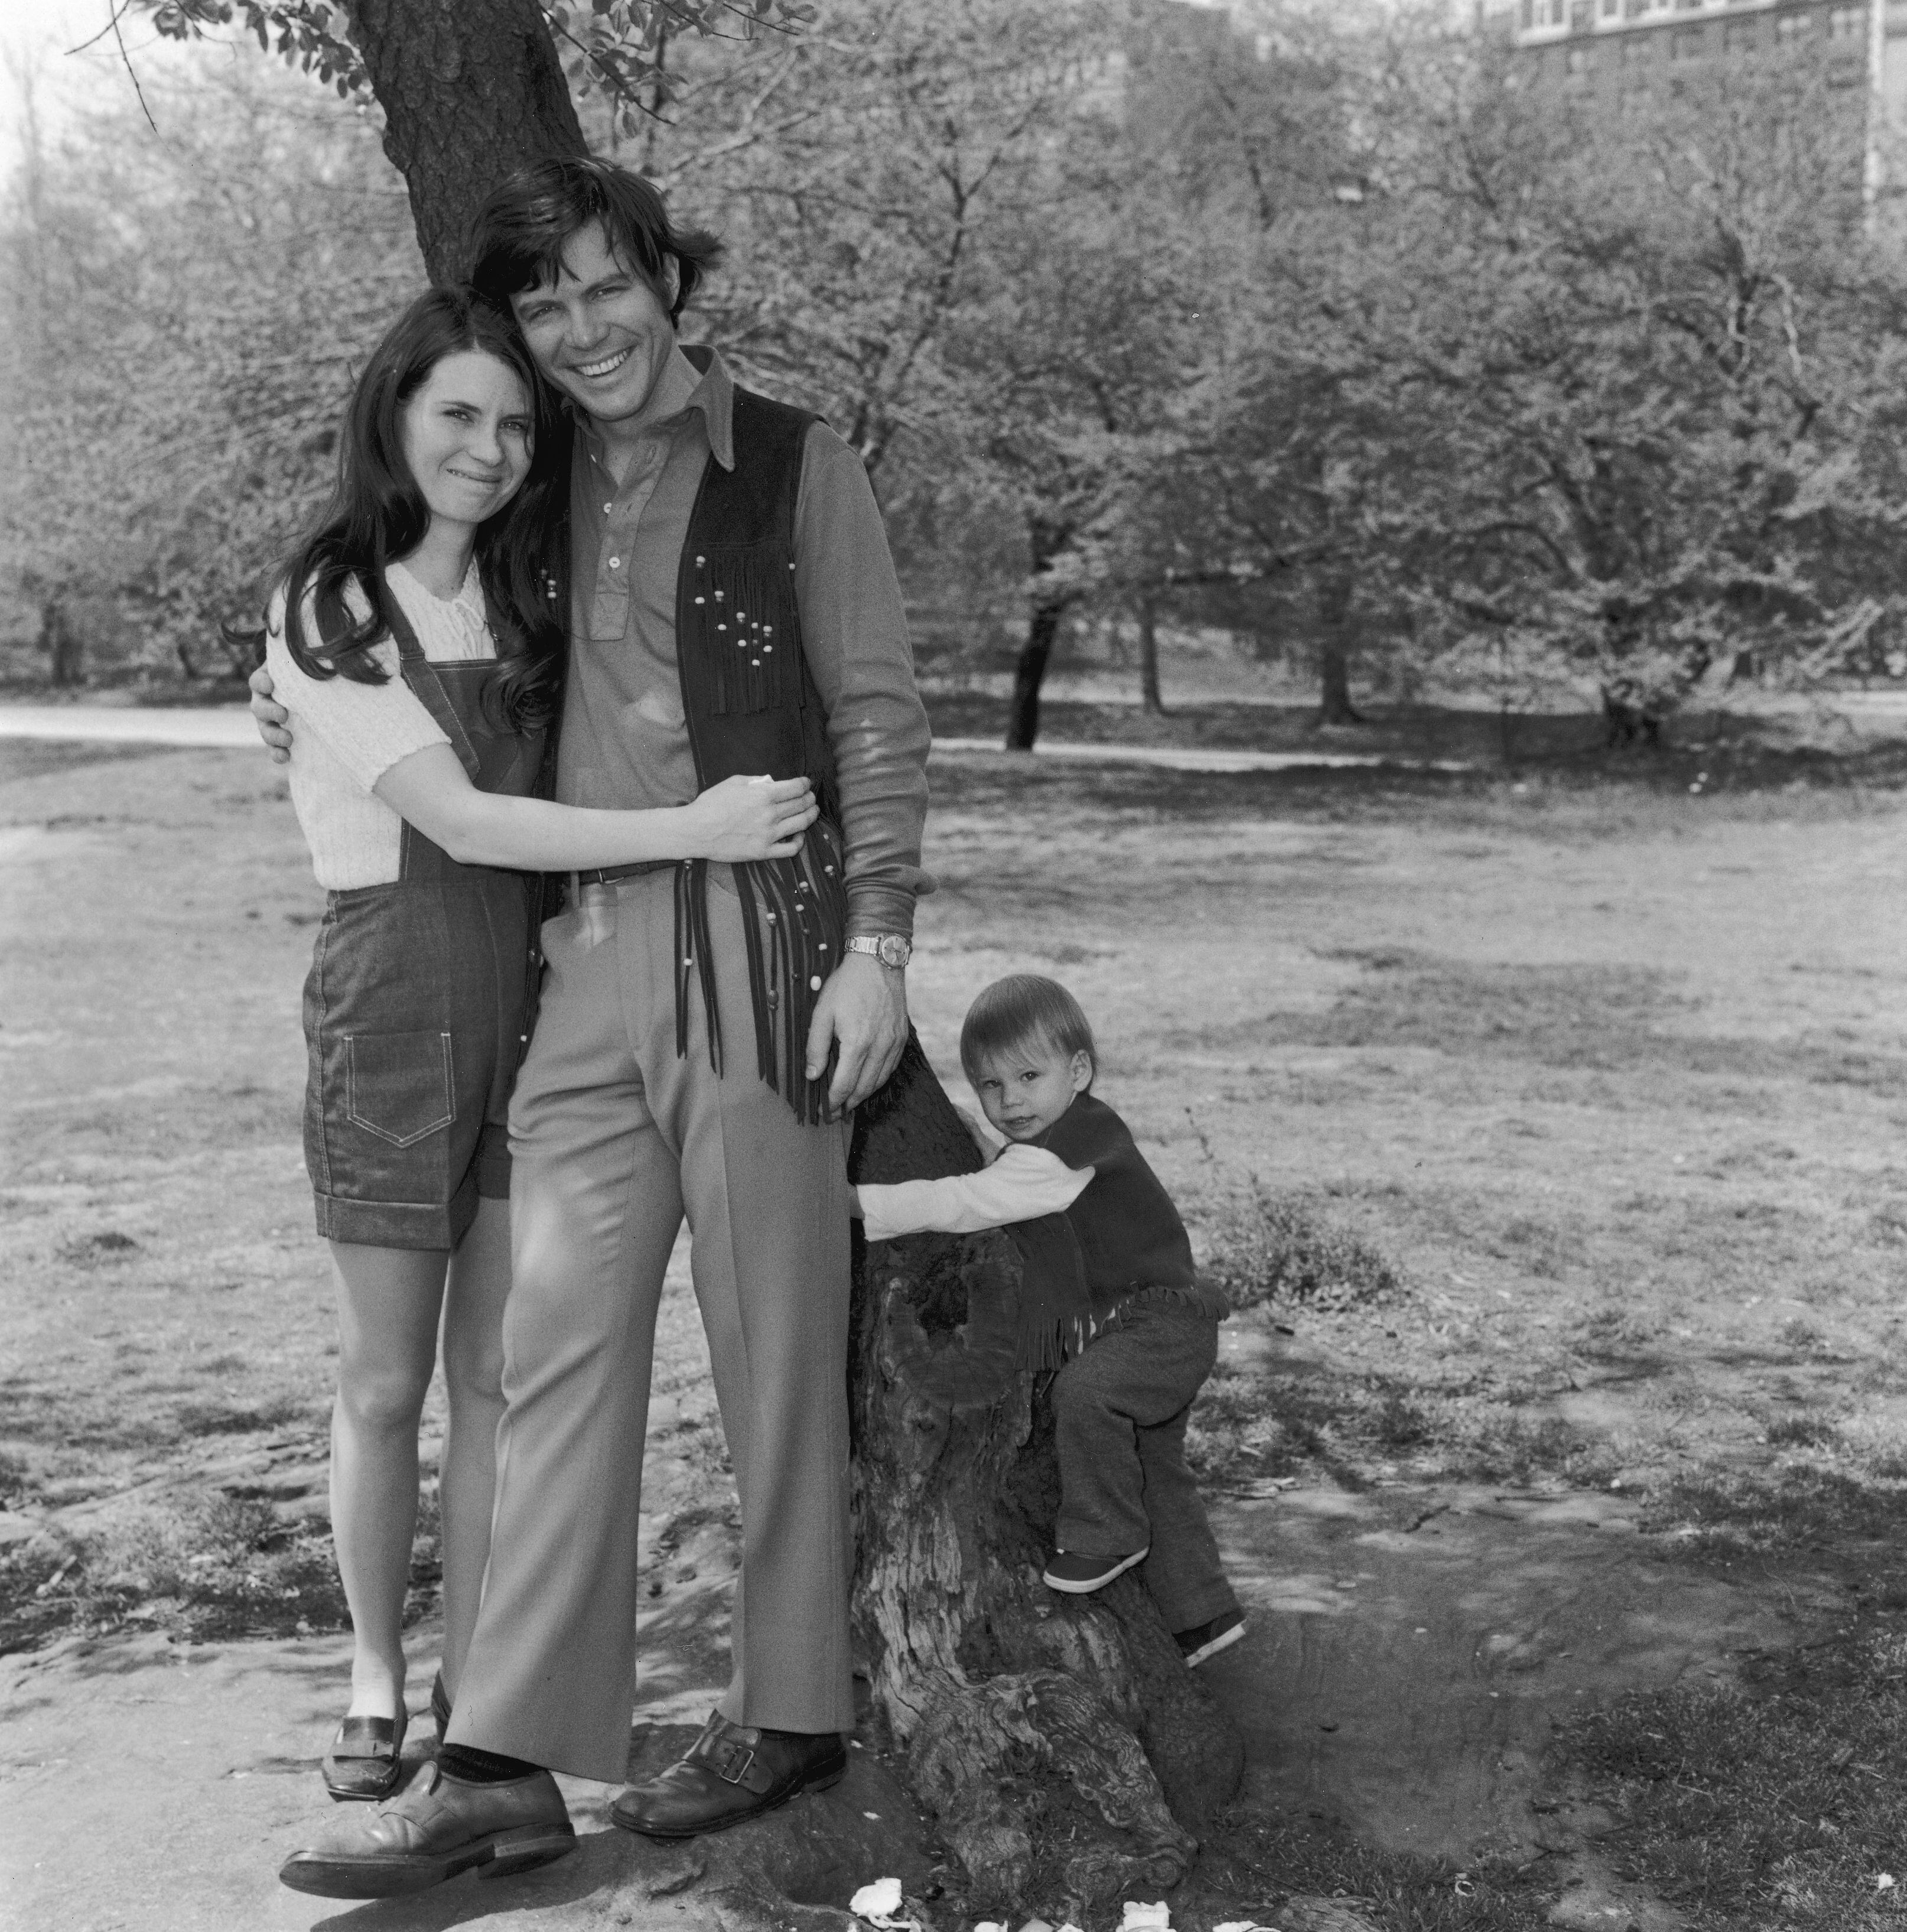 A diretora de elenco Mary Jo Slater e o ator Michael Hawkins com seu filho, Christian Slater, no Central Park, Nova York em 1973.